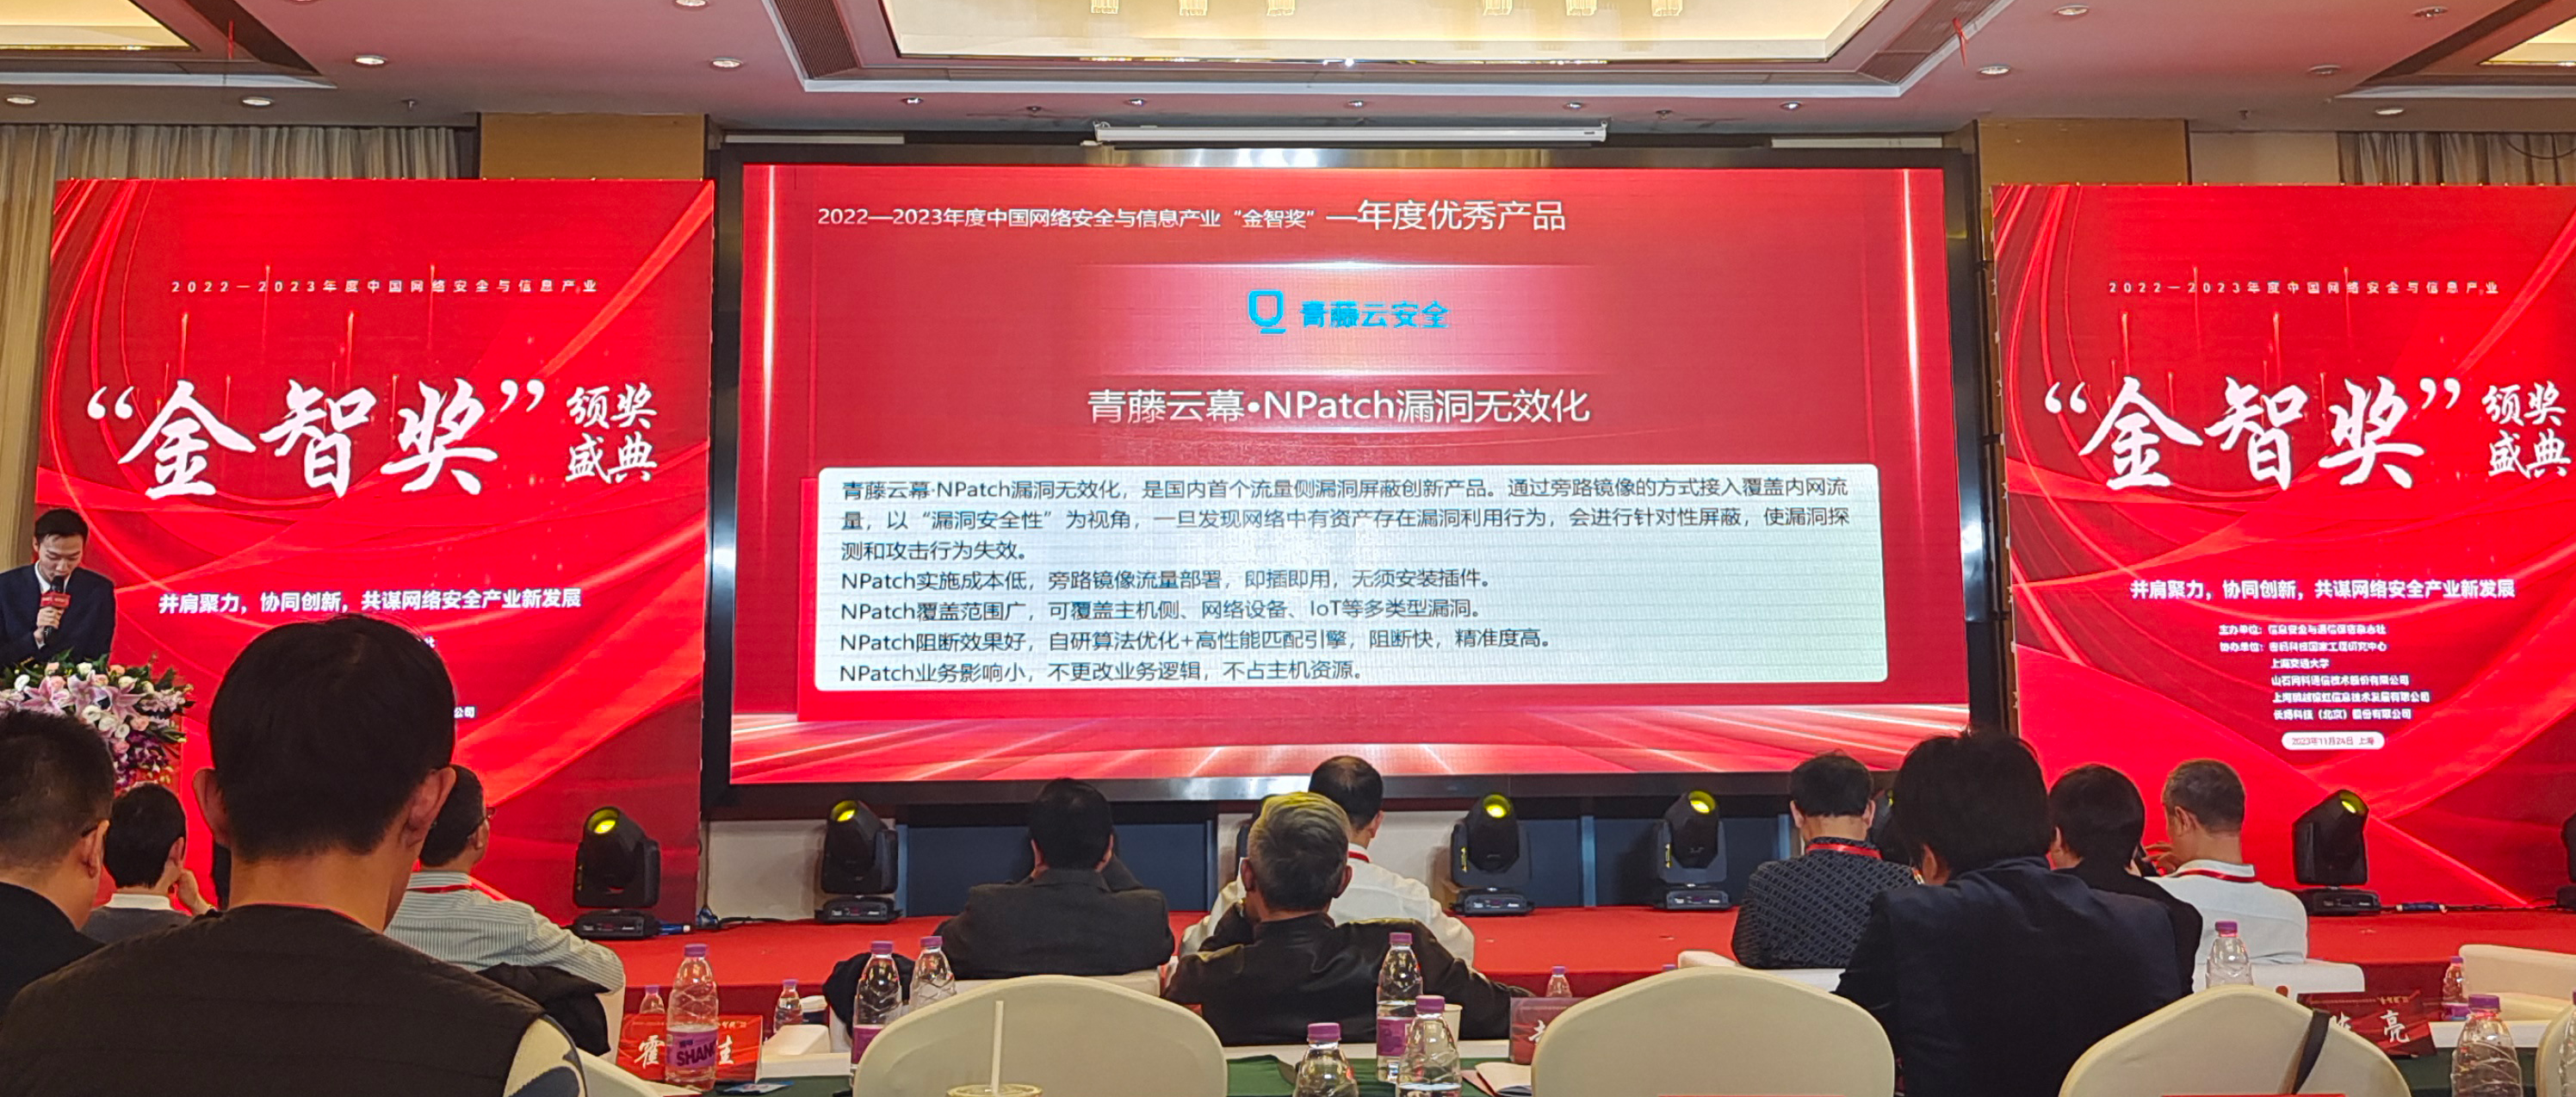 青藤NPatch荣获“中国网络安全与信息产业金智奖——优秀产品奖”